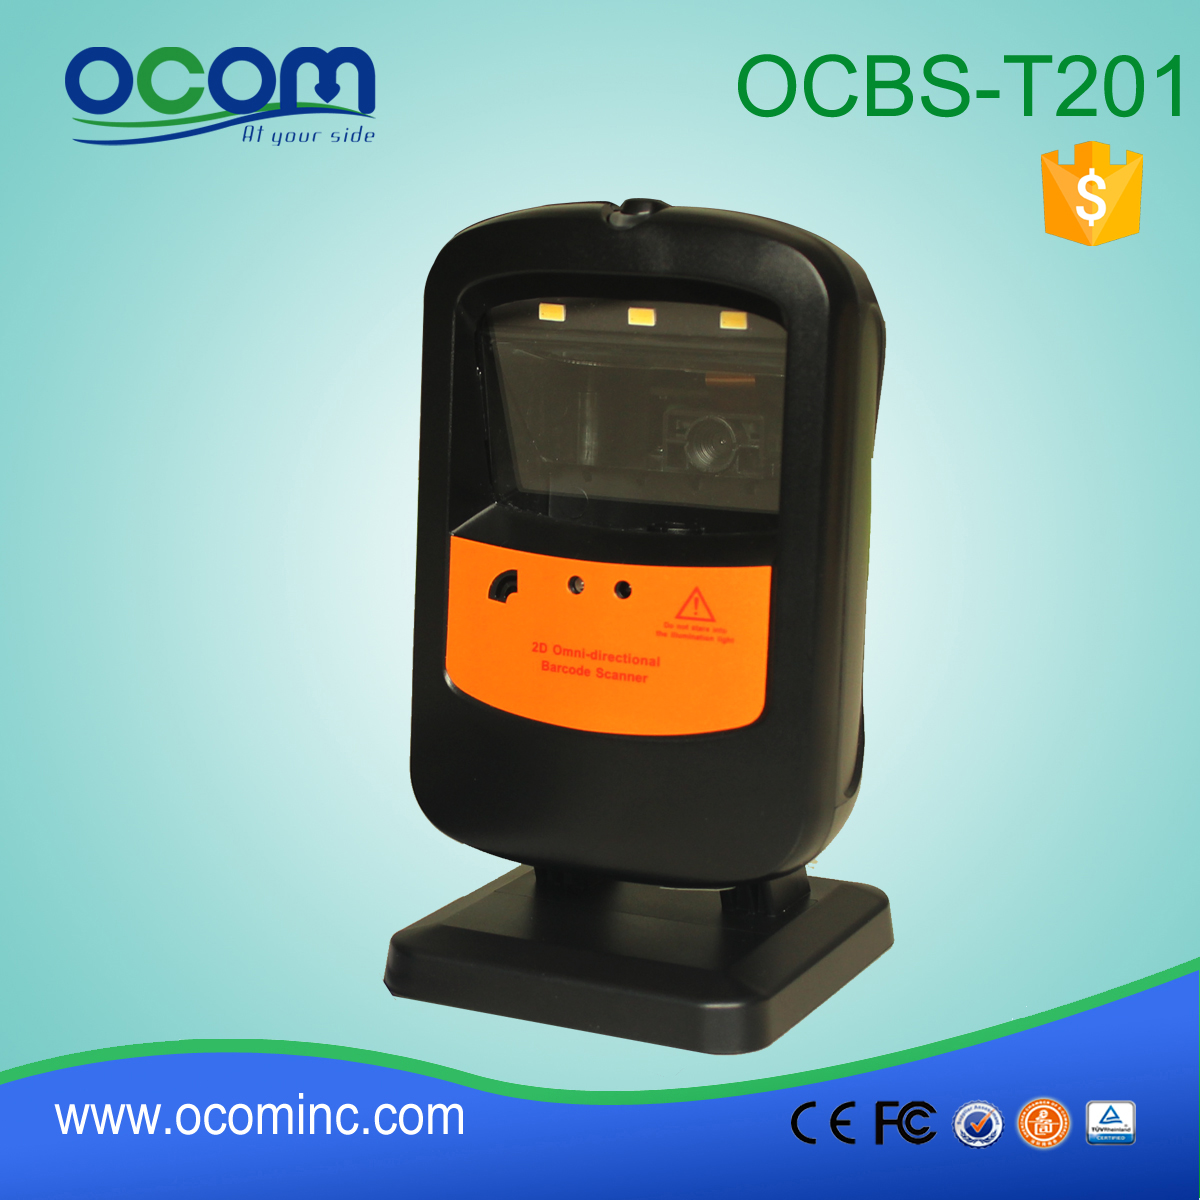 OCBS-T201: أرخص ماسح الباركود 2D، الماسح الضوئي الباركود جبل ثابت